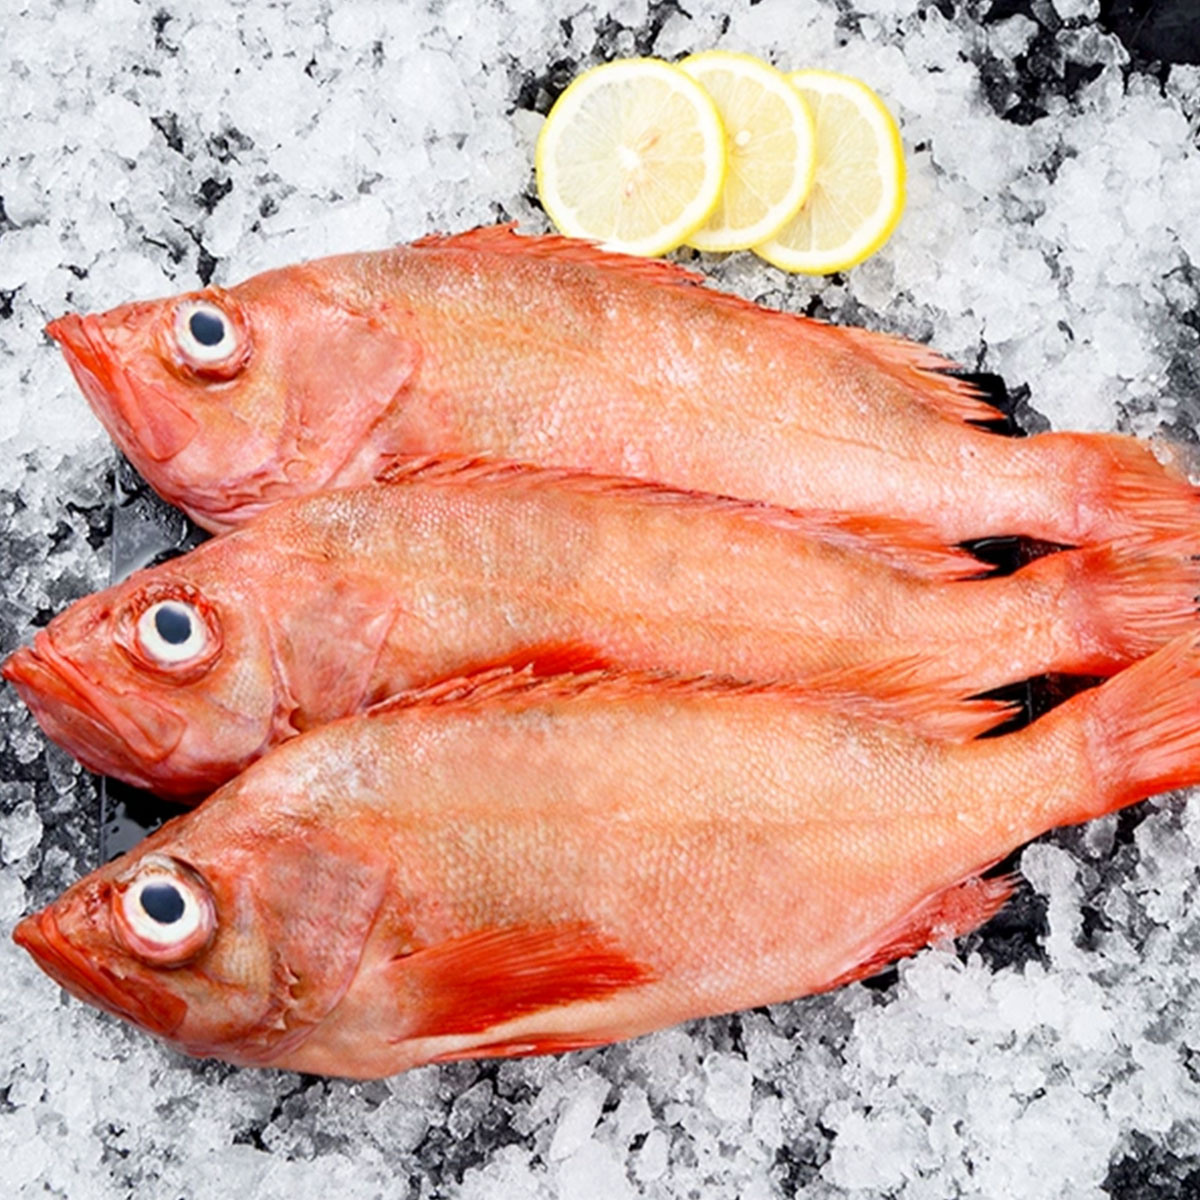 【三去】冰岛红石斑鱼约400-500g/条去鳞去腮去内脏中通/圆通随机